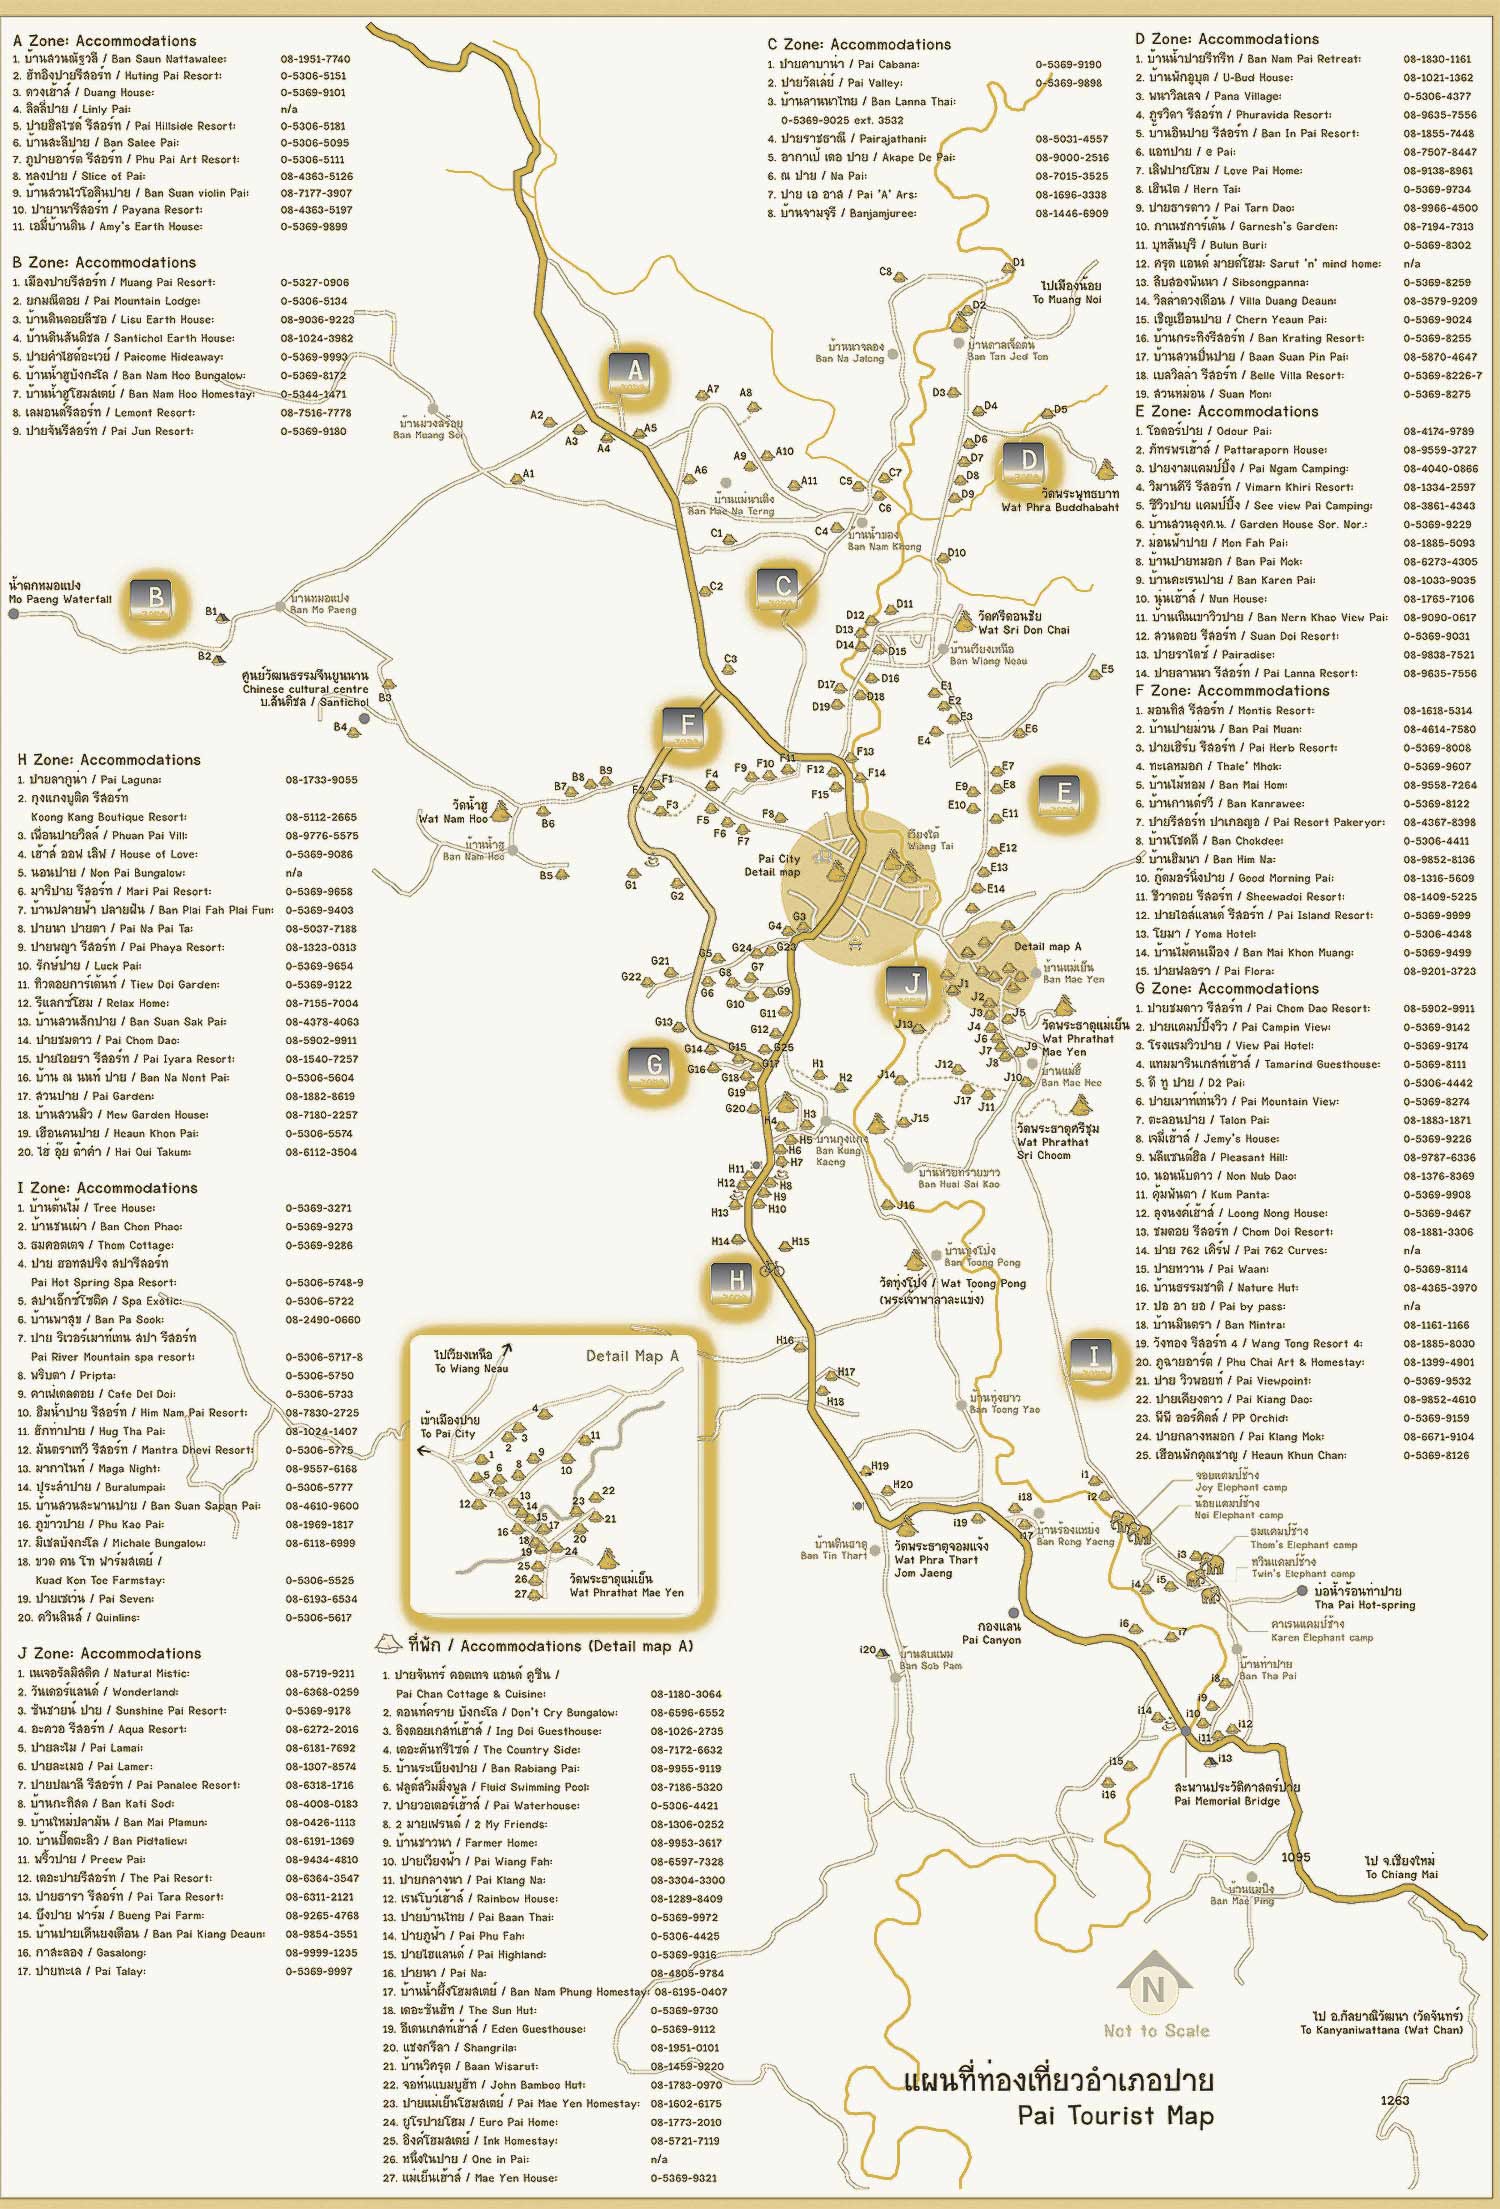 แผนที่ อำเภอปาย แม่ฮ่องสอน,Pai Maehongson Map